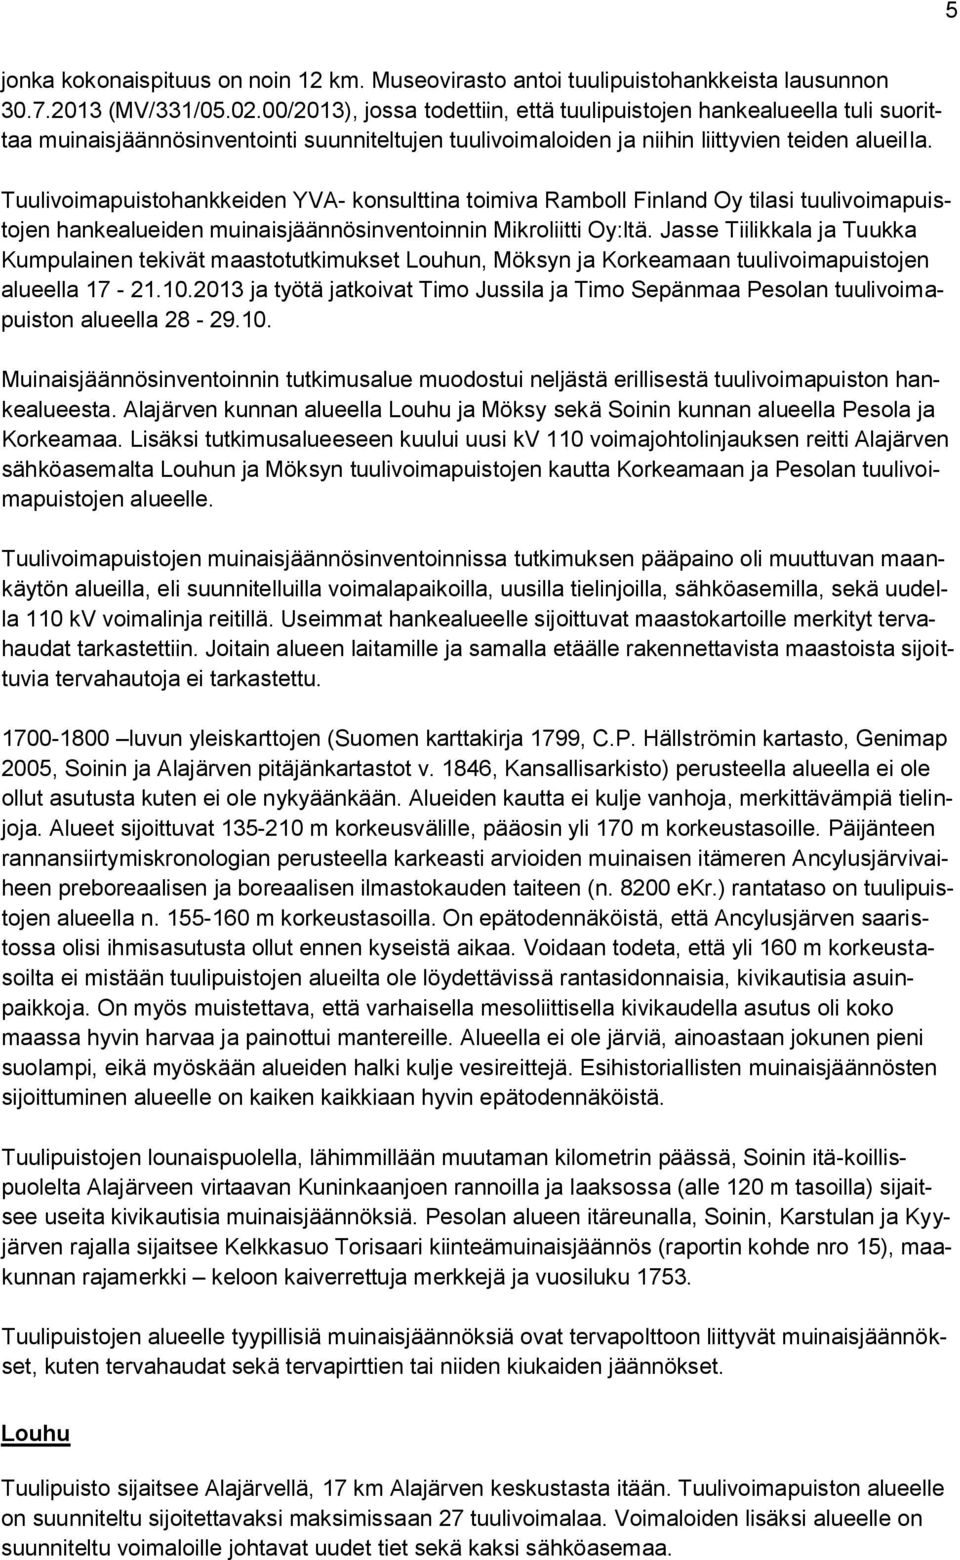 Tuulivoimapuistohankkeiden YVA- konsulttina toimiva Ramboll Finland Oy tilasi tuulivoimapuistojen hankealueiden muinaisjäännösinventoinnin Mikroliitti Oy:ltä.